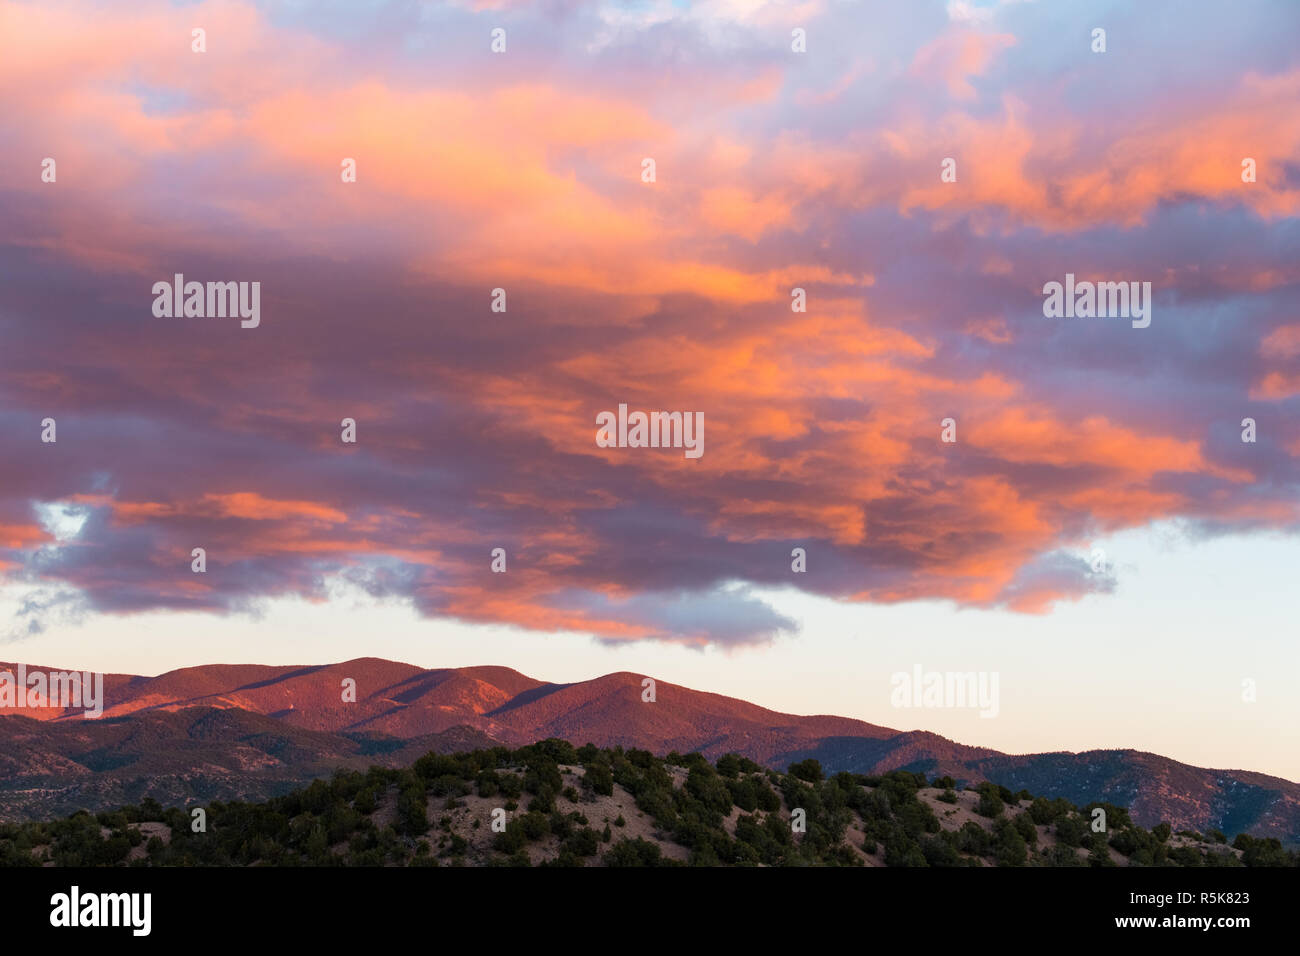 Dramatische, wunderschönen Sonnenuntergang wirft lila und orange Farben auf Wolken und der Sangre de Cristo Mountains in der Nähe von Santa Fe, New Mexico Stockfoto